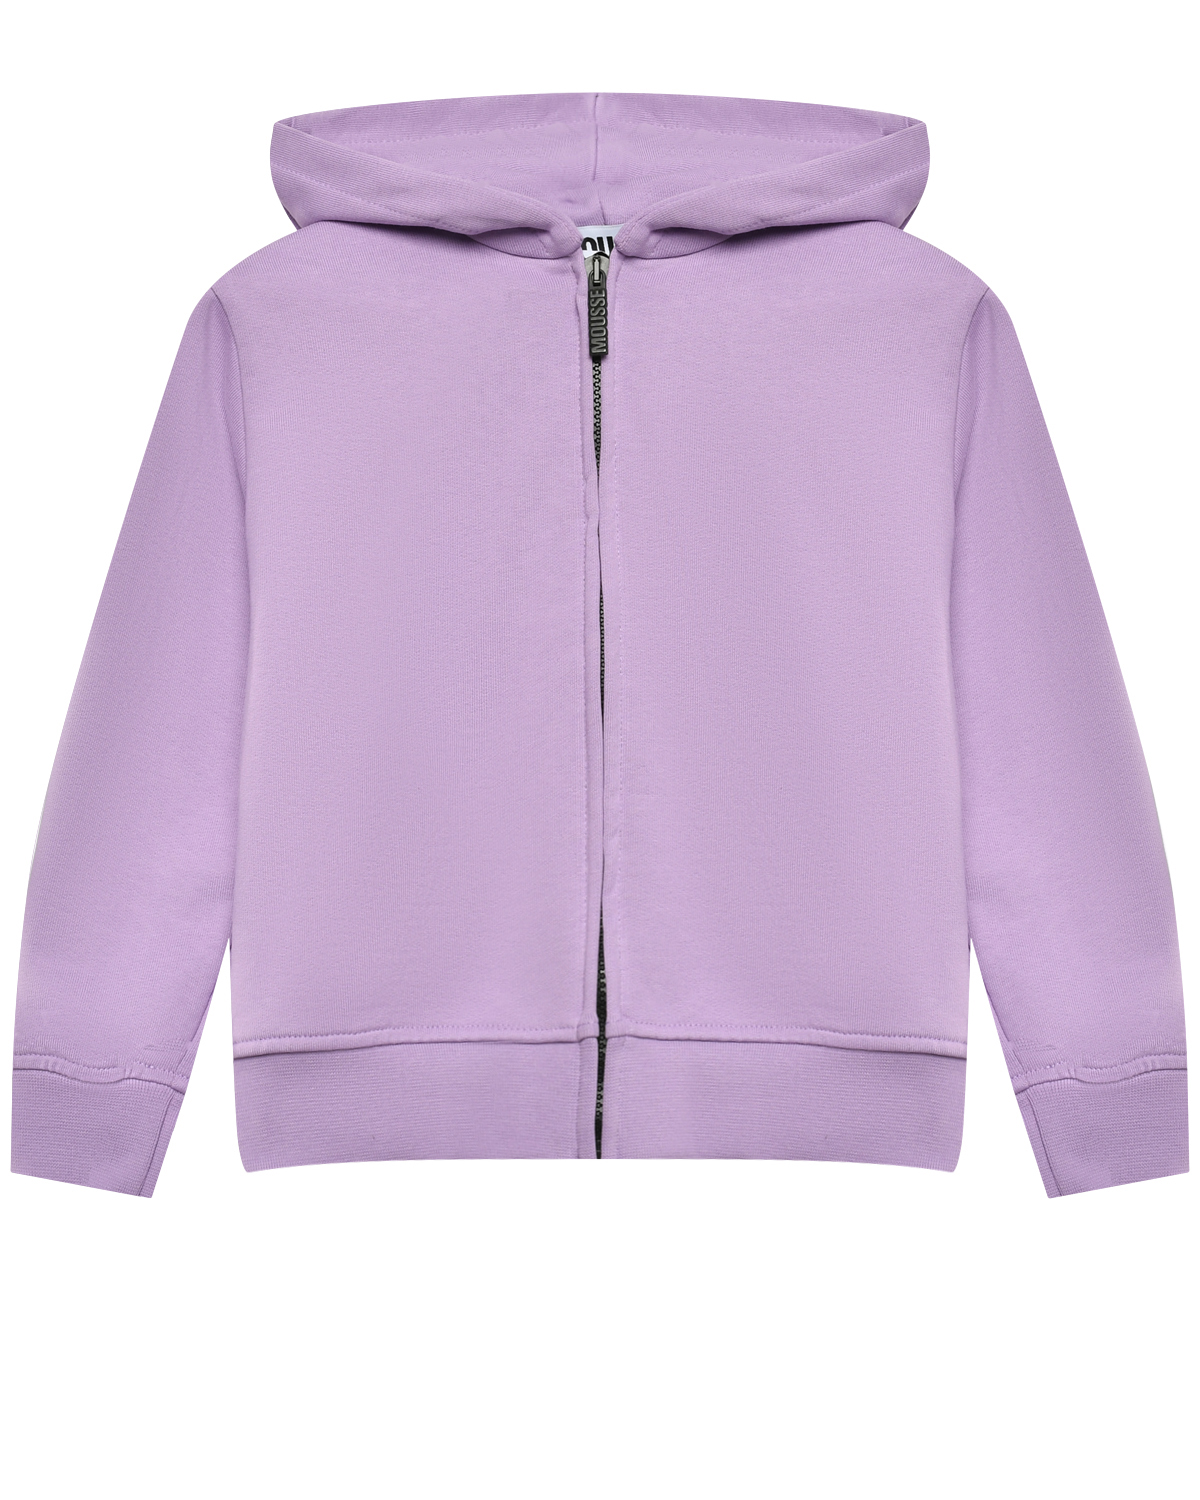 Куртка спортивная с принтом на спине, фиолетовая Mousse kids, размер 104, цвет лиловый